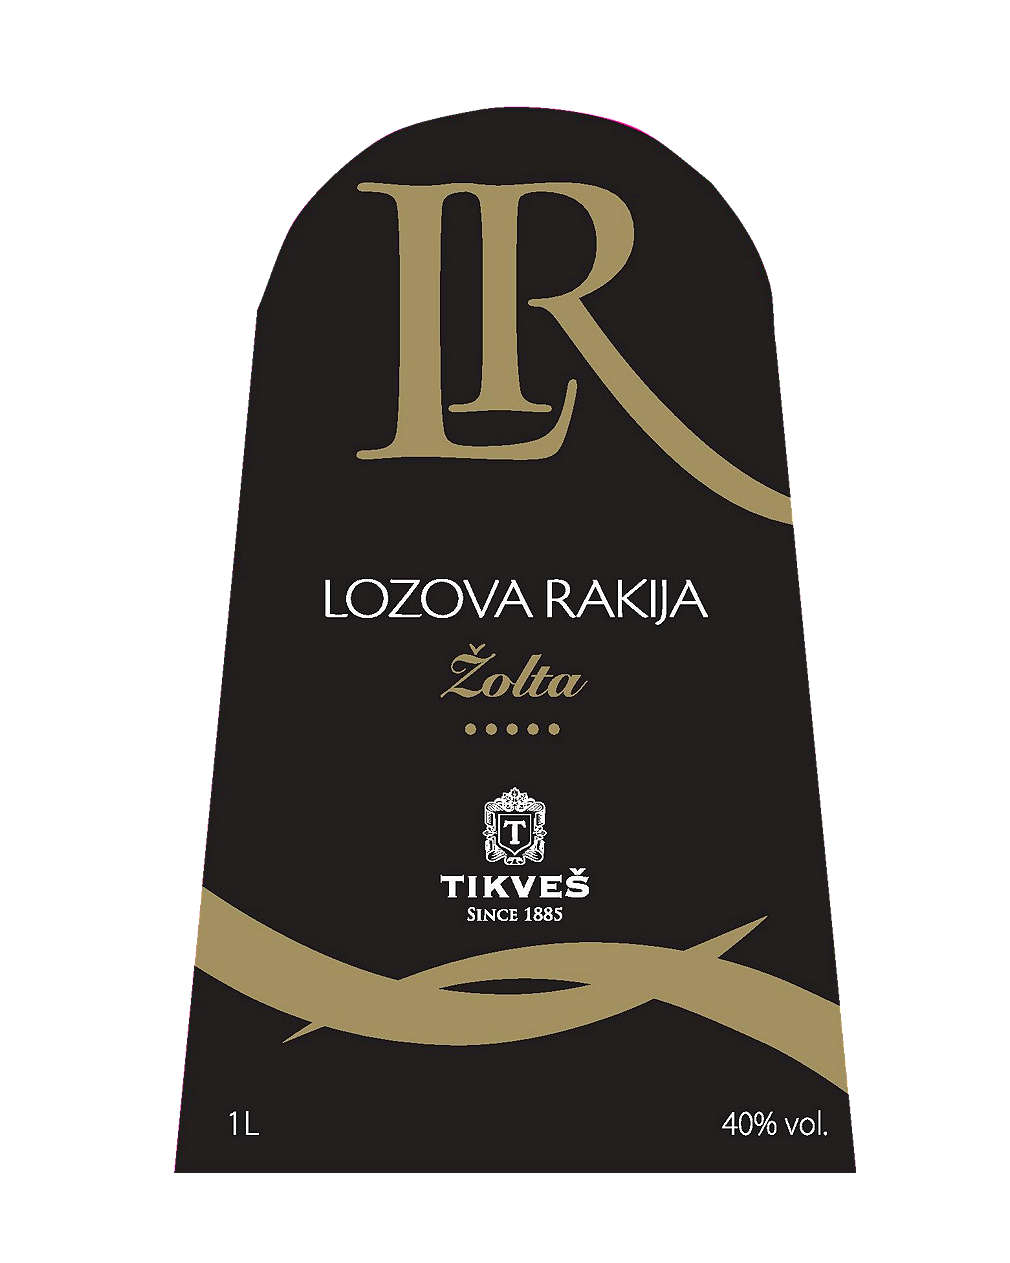 Изображение за продукта Tikves Zolta LR Гроздова ракия